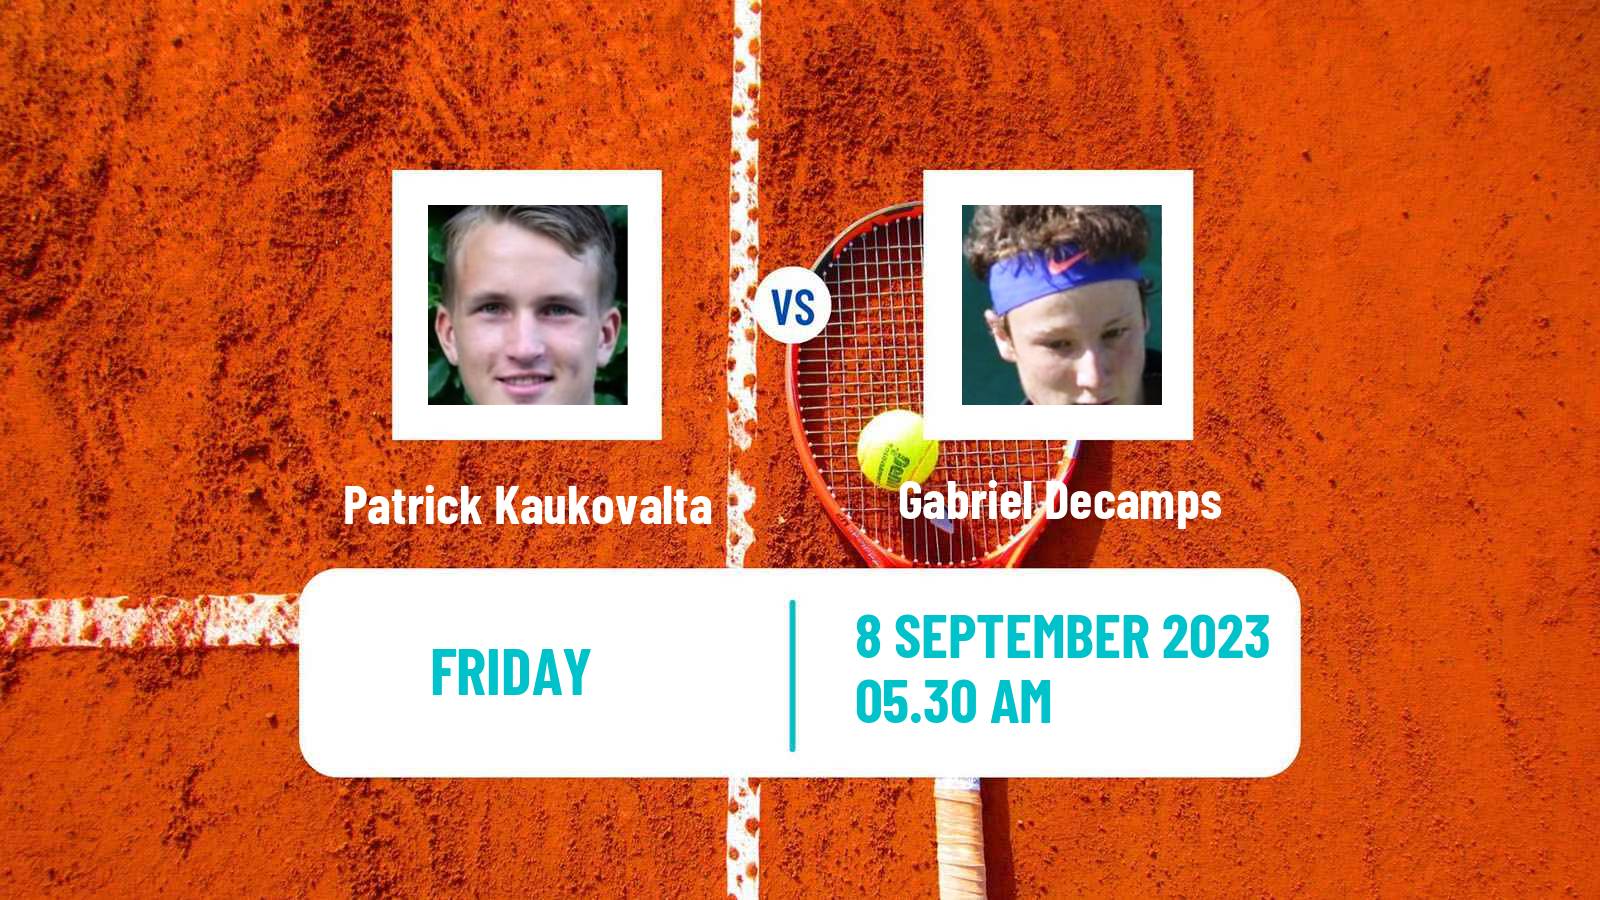 Tennis ITF M15 Budapest 2 Men Patrick Kaukovalta - Gabriel Decamps